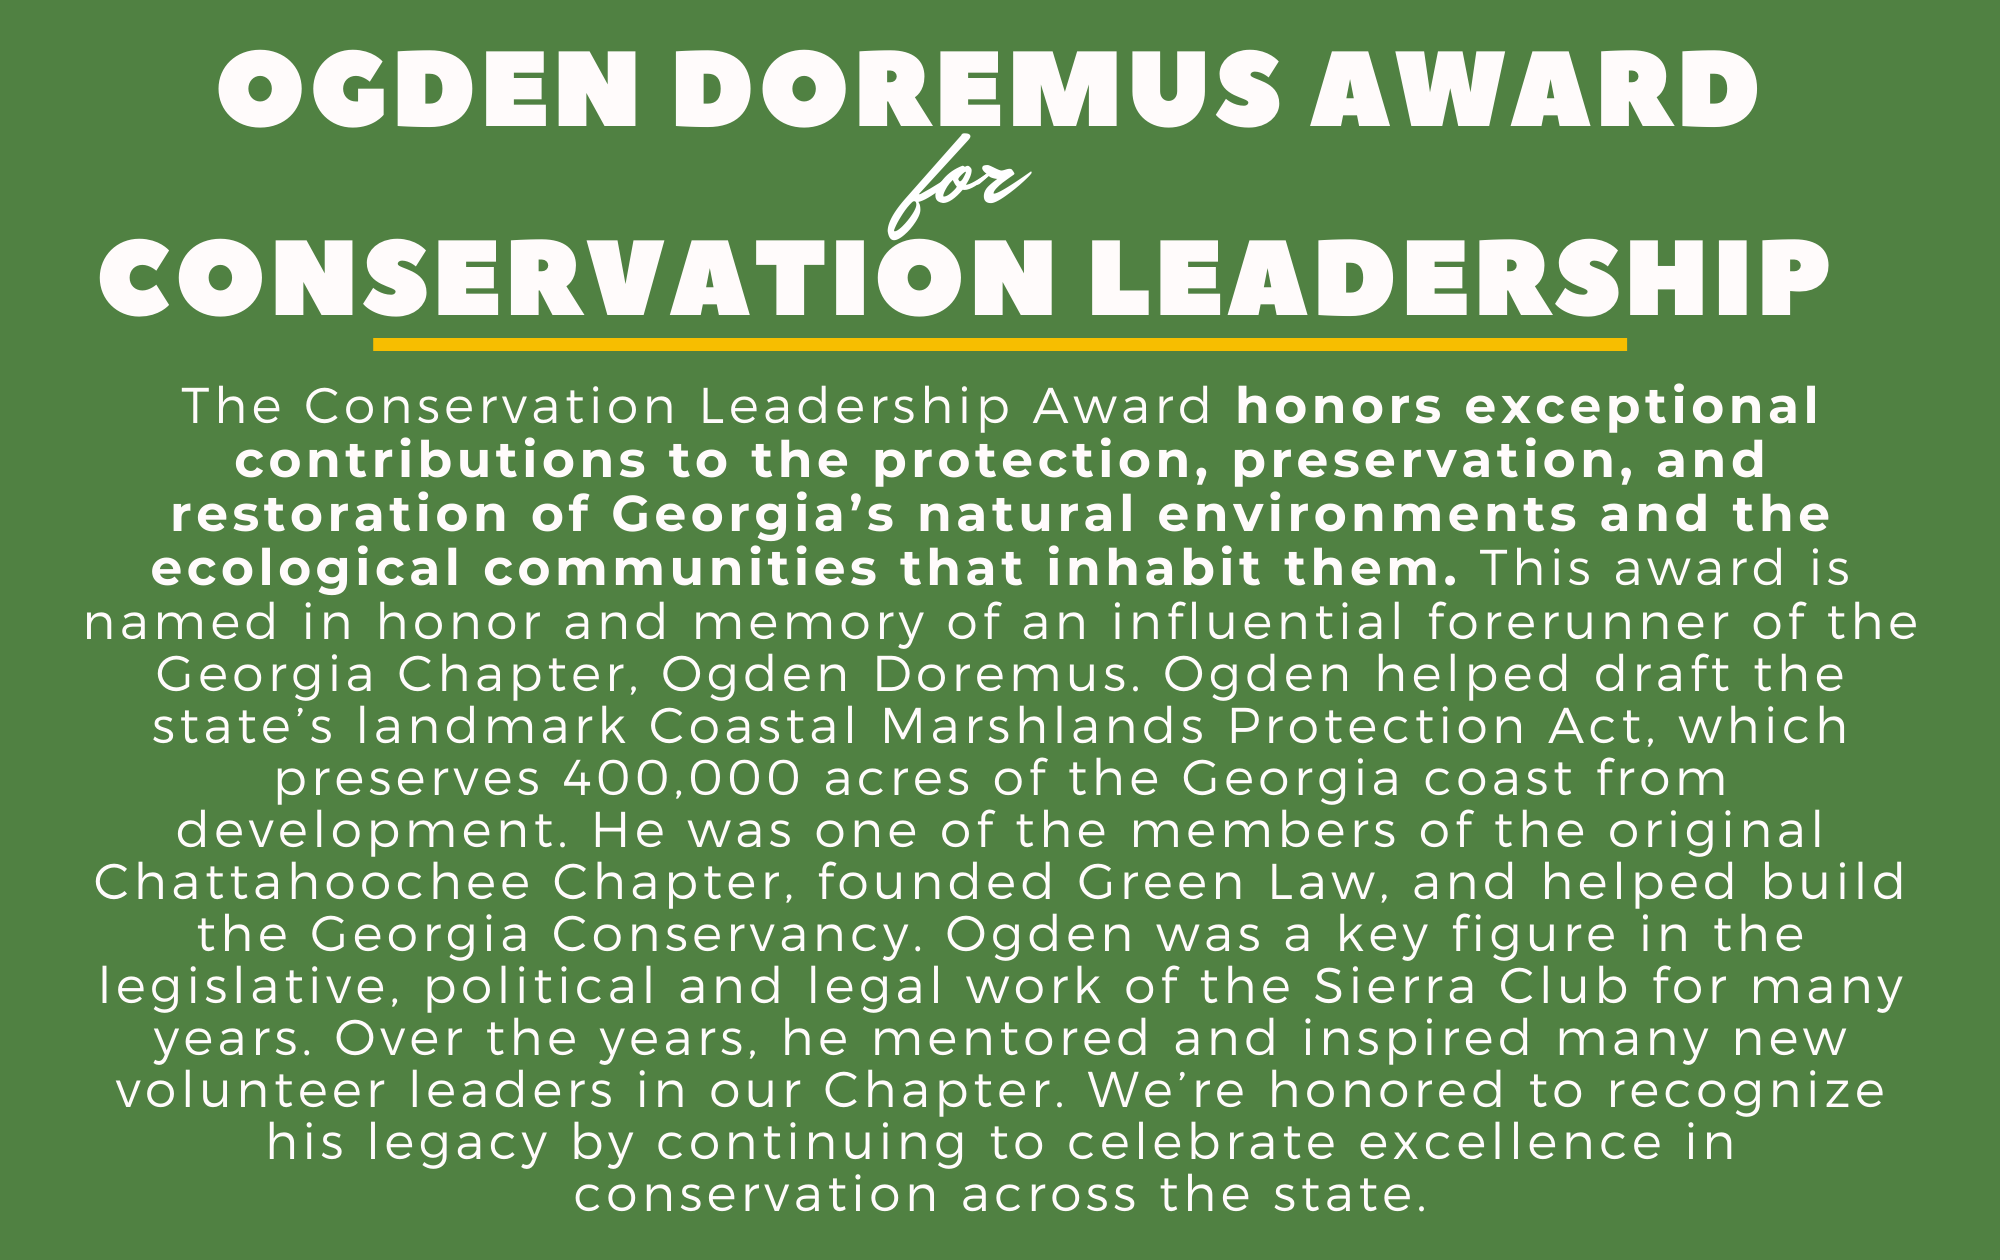 Ogden Doremus Award for Conservation Leadership